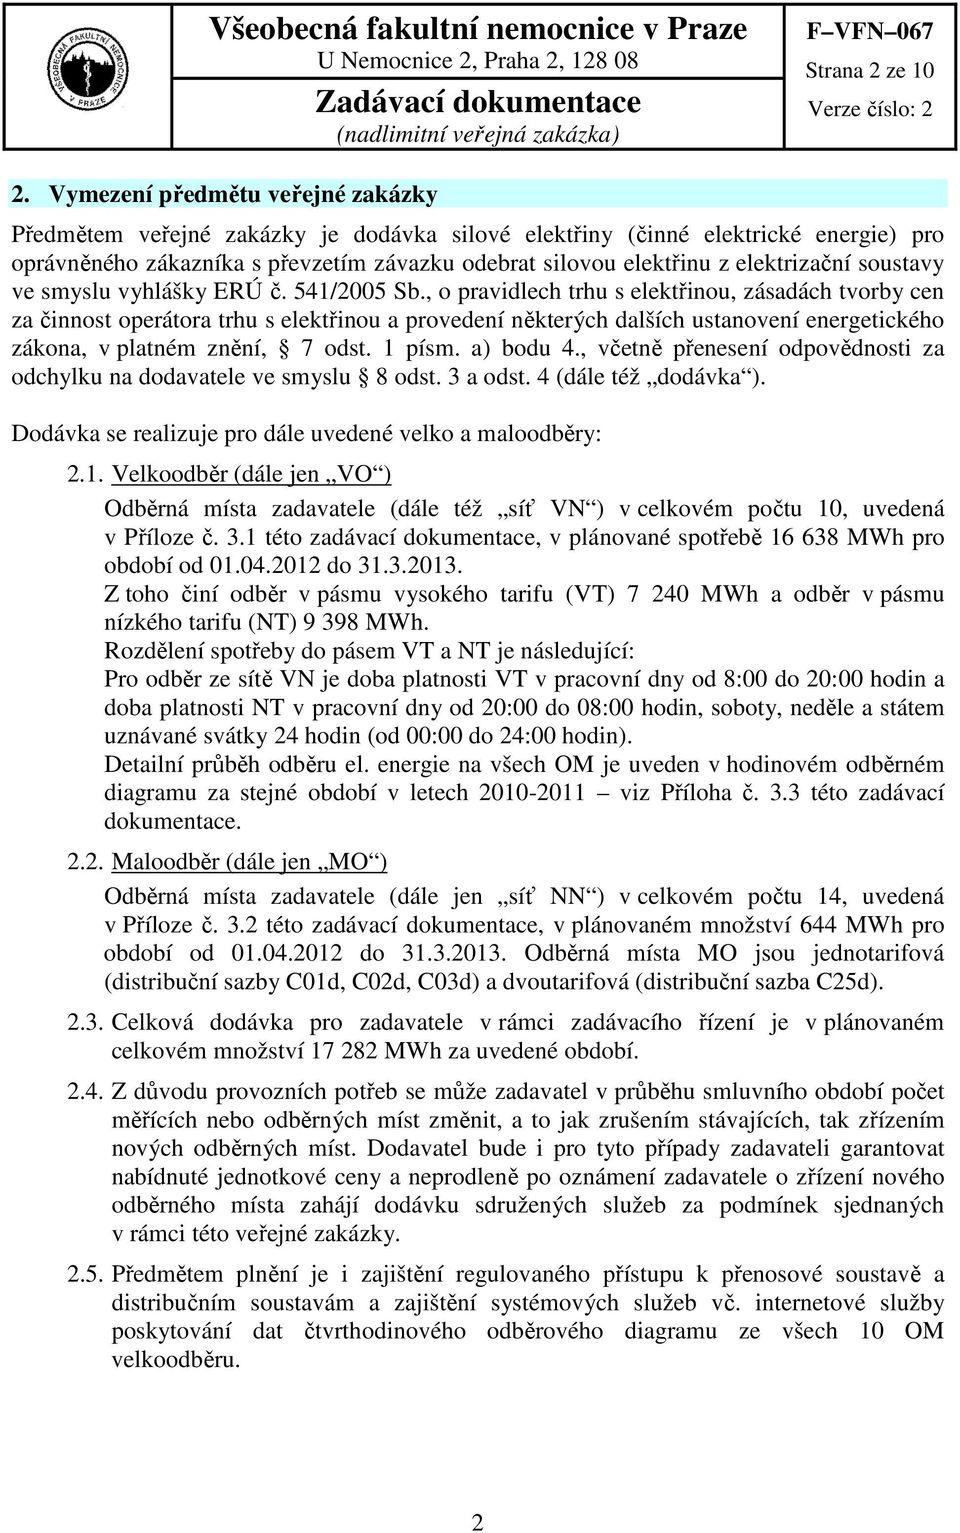 elektrizační soustavy ve smyslu vyhlášky ERÚ č. 541/2005 Sb.